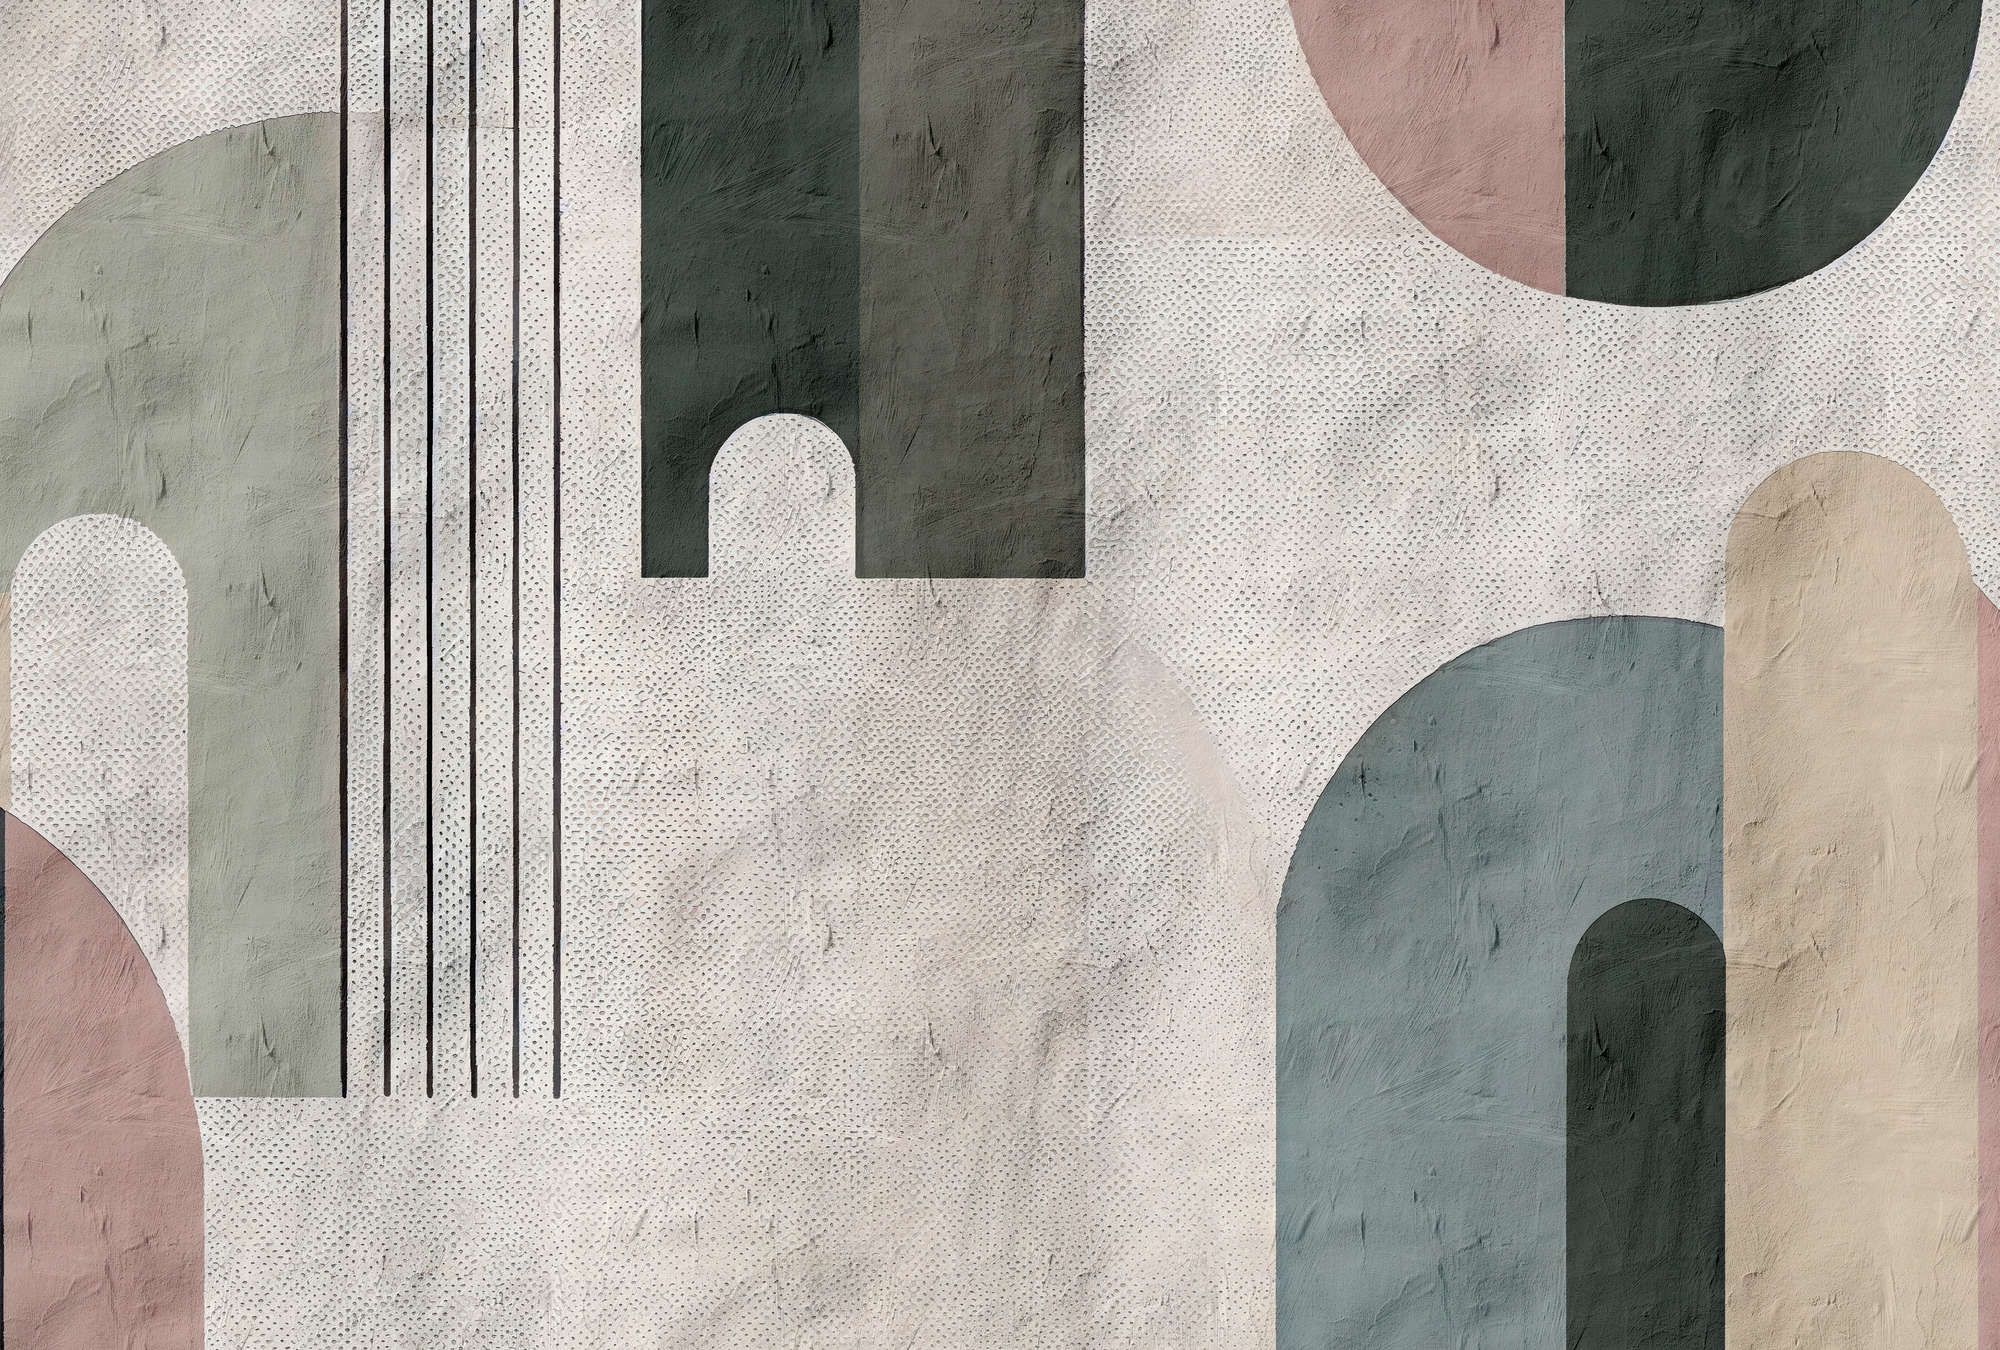             papier peint en papier panoramique »torenta« - motif graphique avec arc en plein cintre, structure d'argile - intissé mat et lisse
        